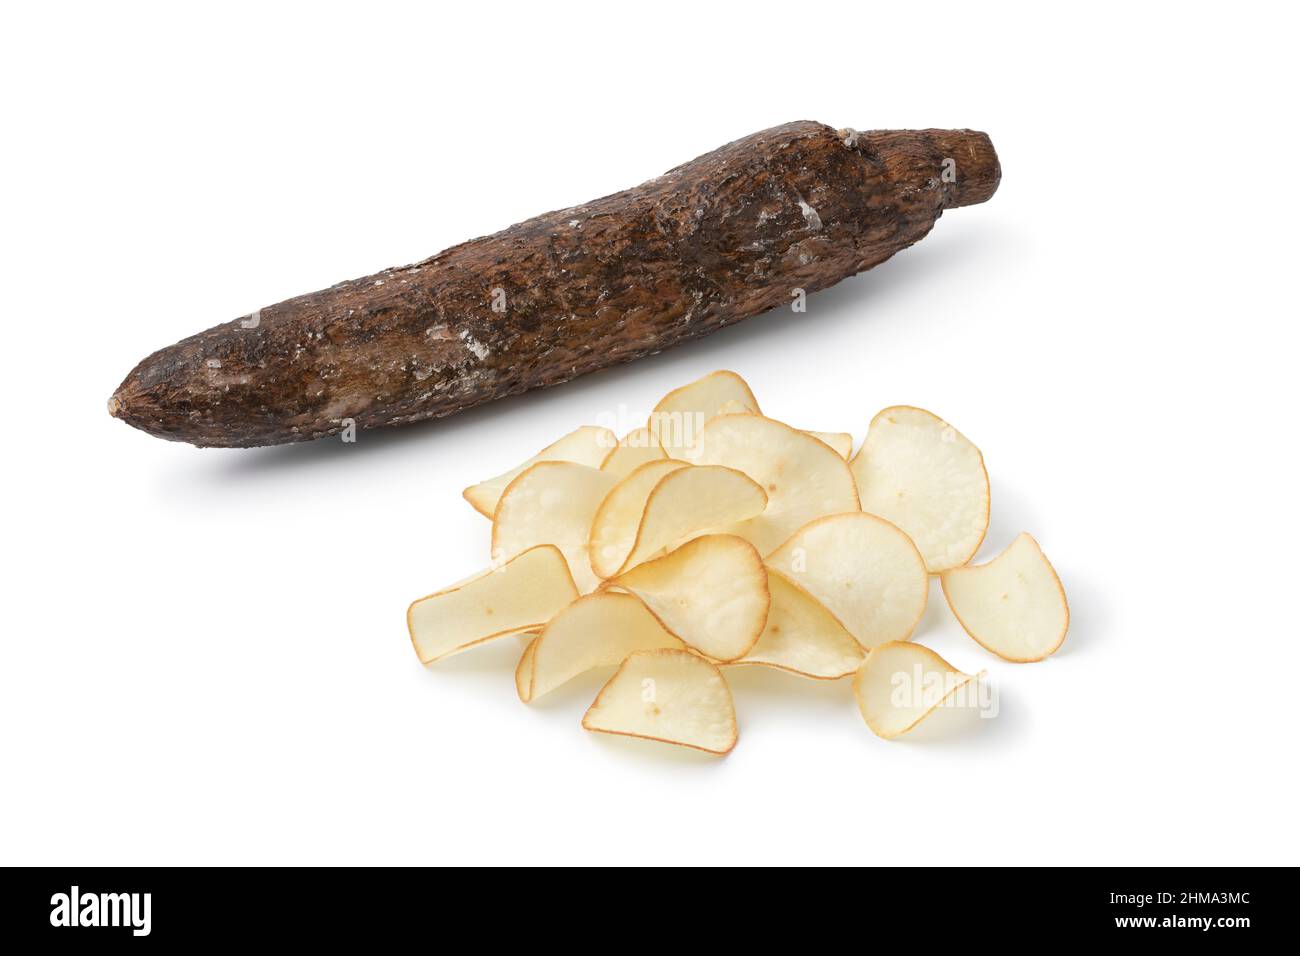 Tas de croustilles de manioc frits croquantes et de manioc entier, isolés sur fond blanc Banque D'Images